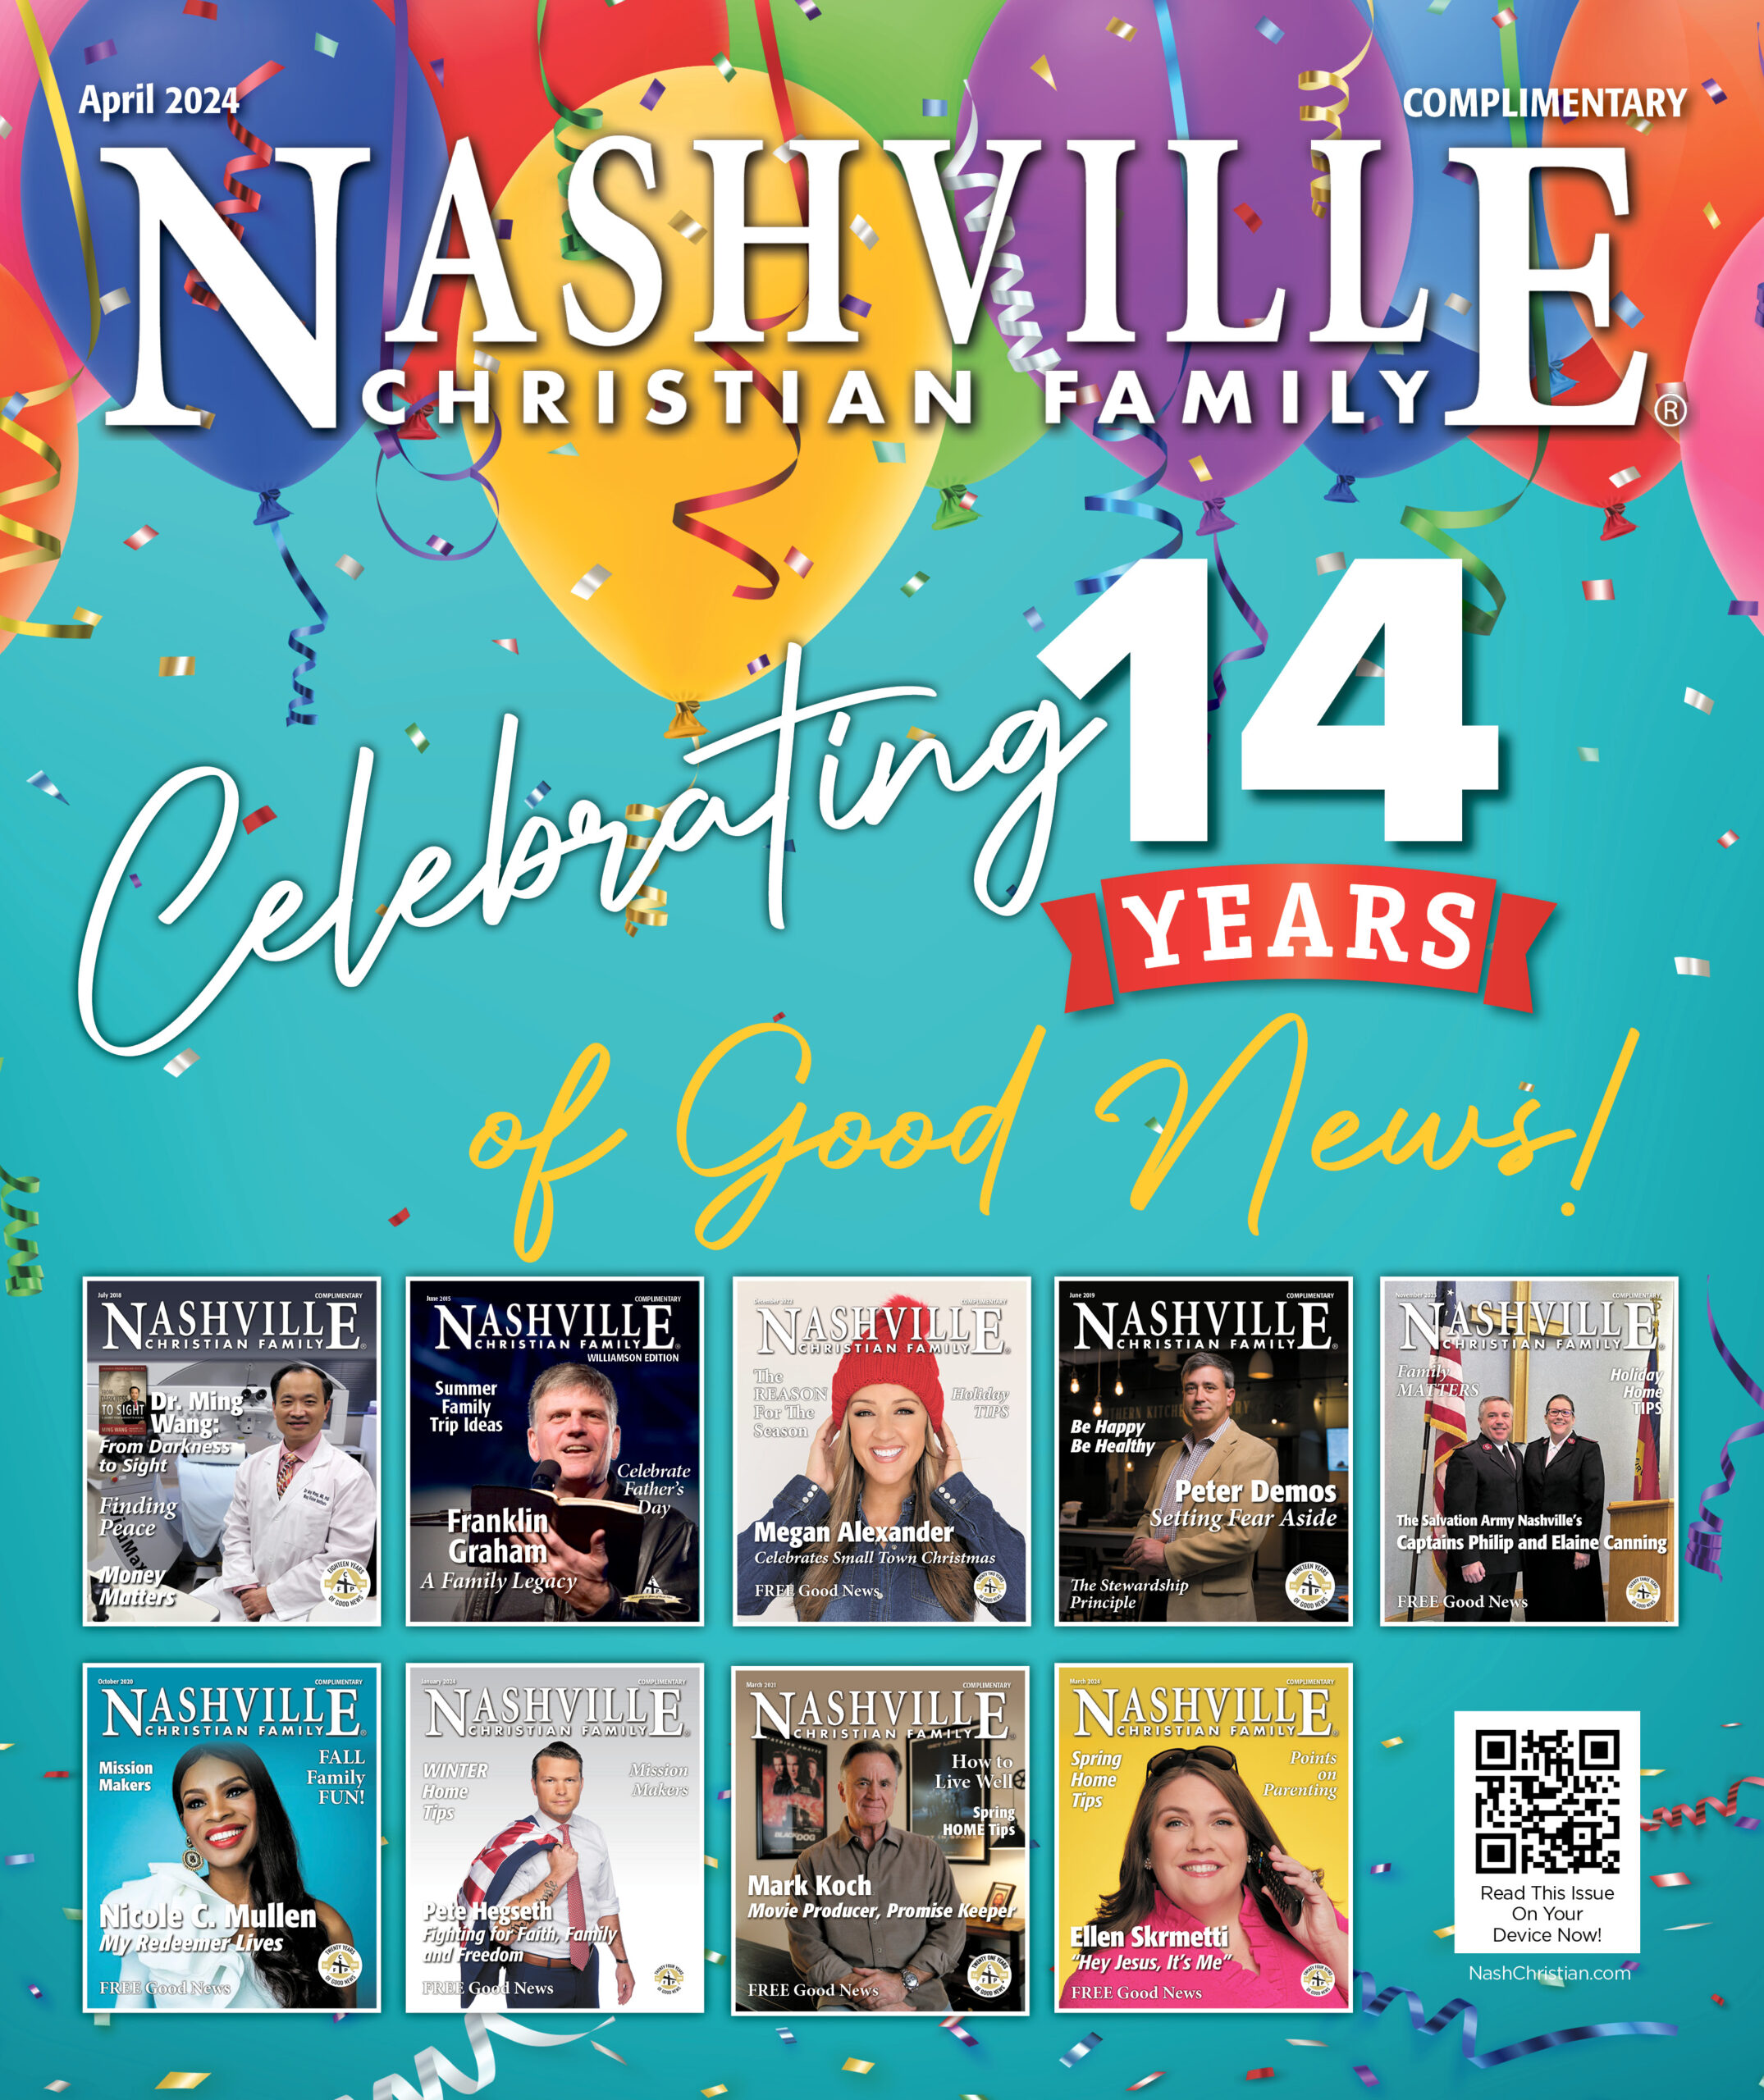 Nashville Christian Family - magazine cover - celebring 14 years | Nashville Christian Family Magazine